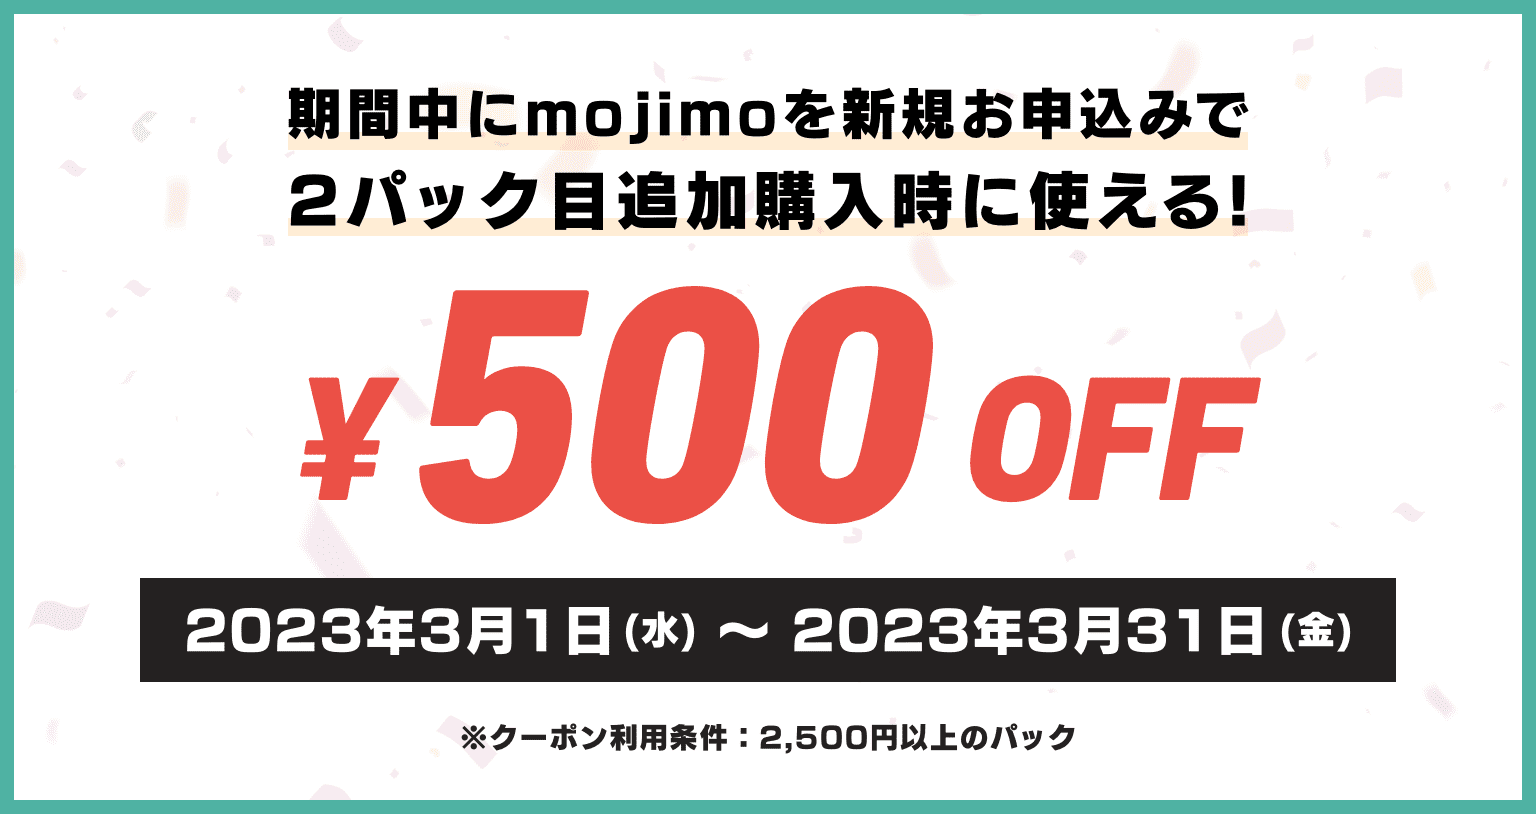 期間中にmojimoを新規お申込みで2パック目追加購入時に使える500円割引 / ※クーポン利用条件：2,500円以上のパック